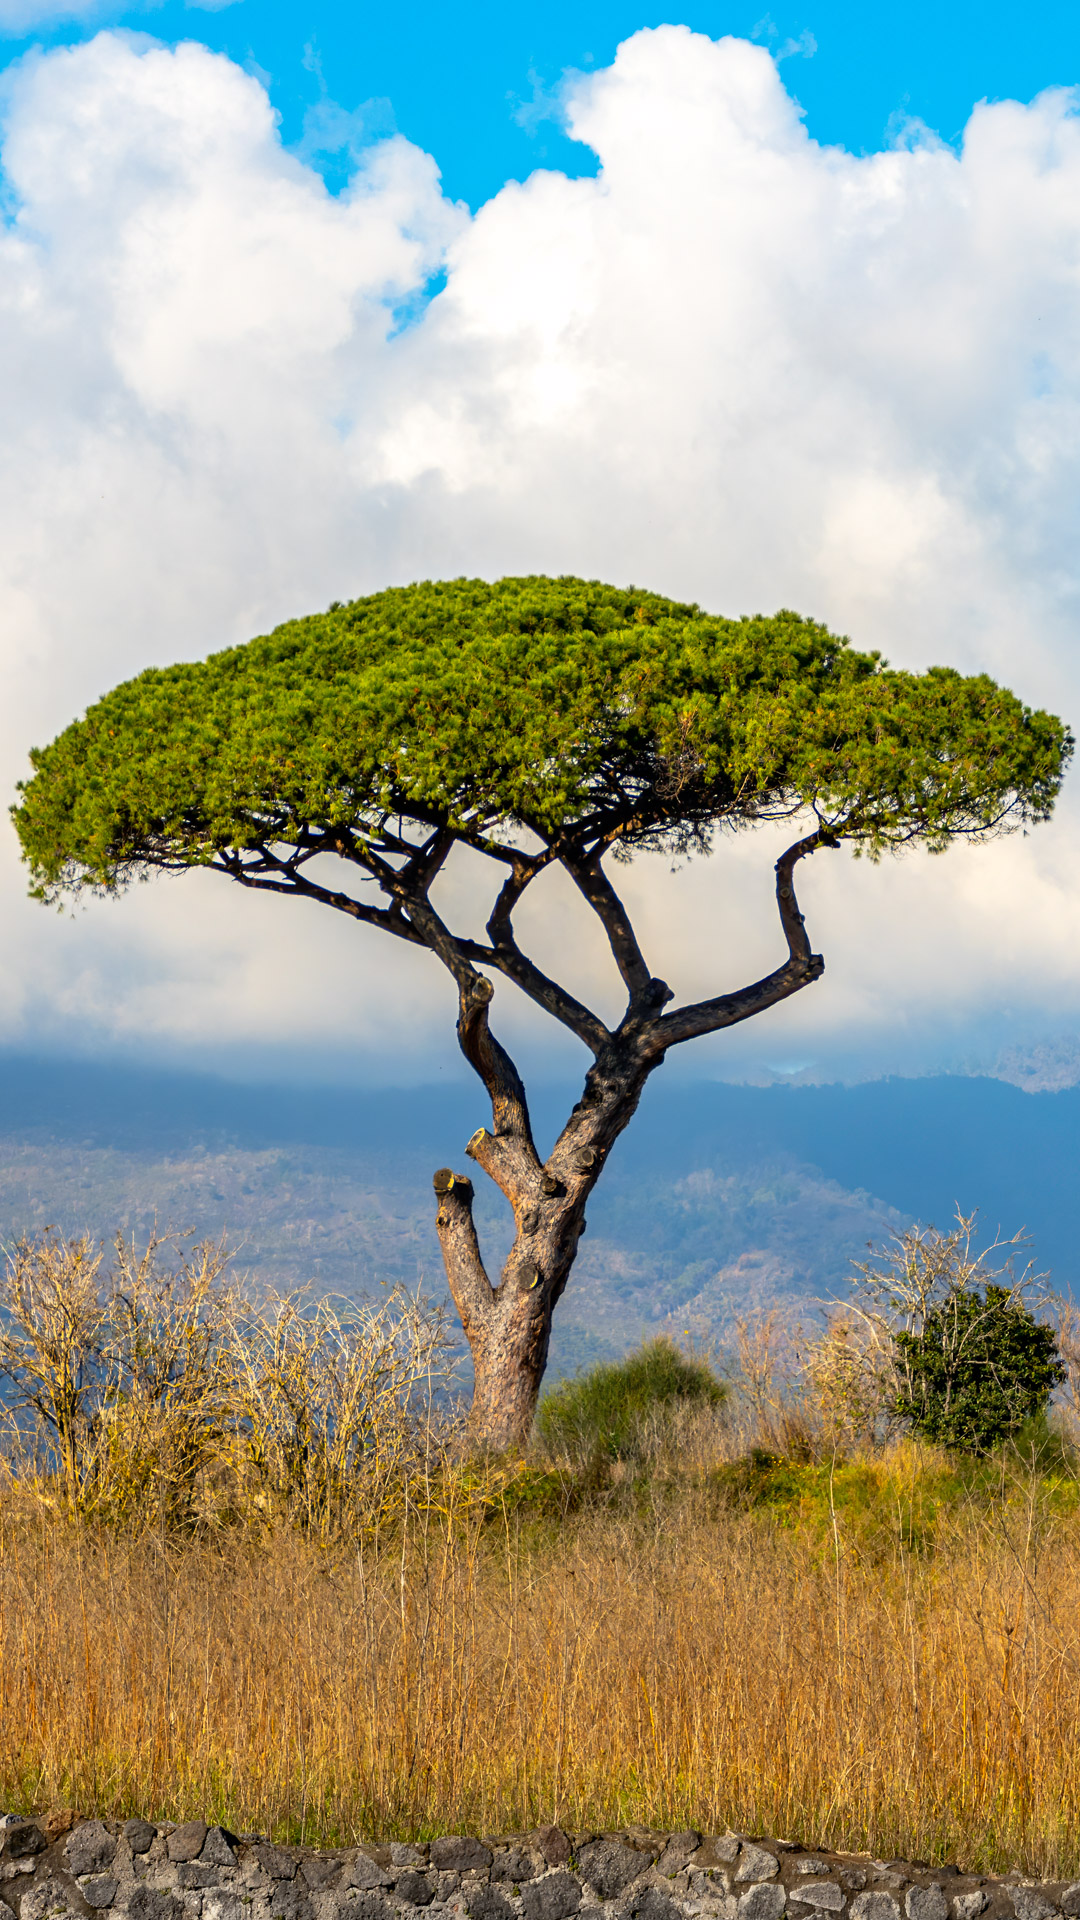 Aventurez-vous dans la campagne italienne avec notre nouveau fond d'écran pour téléphone, capturant la beauté sereine des paysages avec un arbre solitaire se dressant fièrement sur fond de ciel clair.